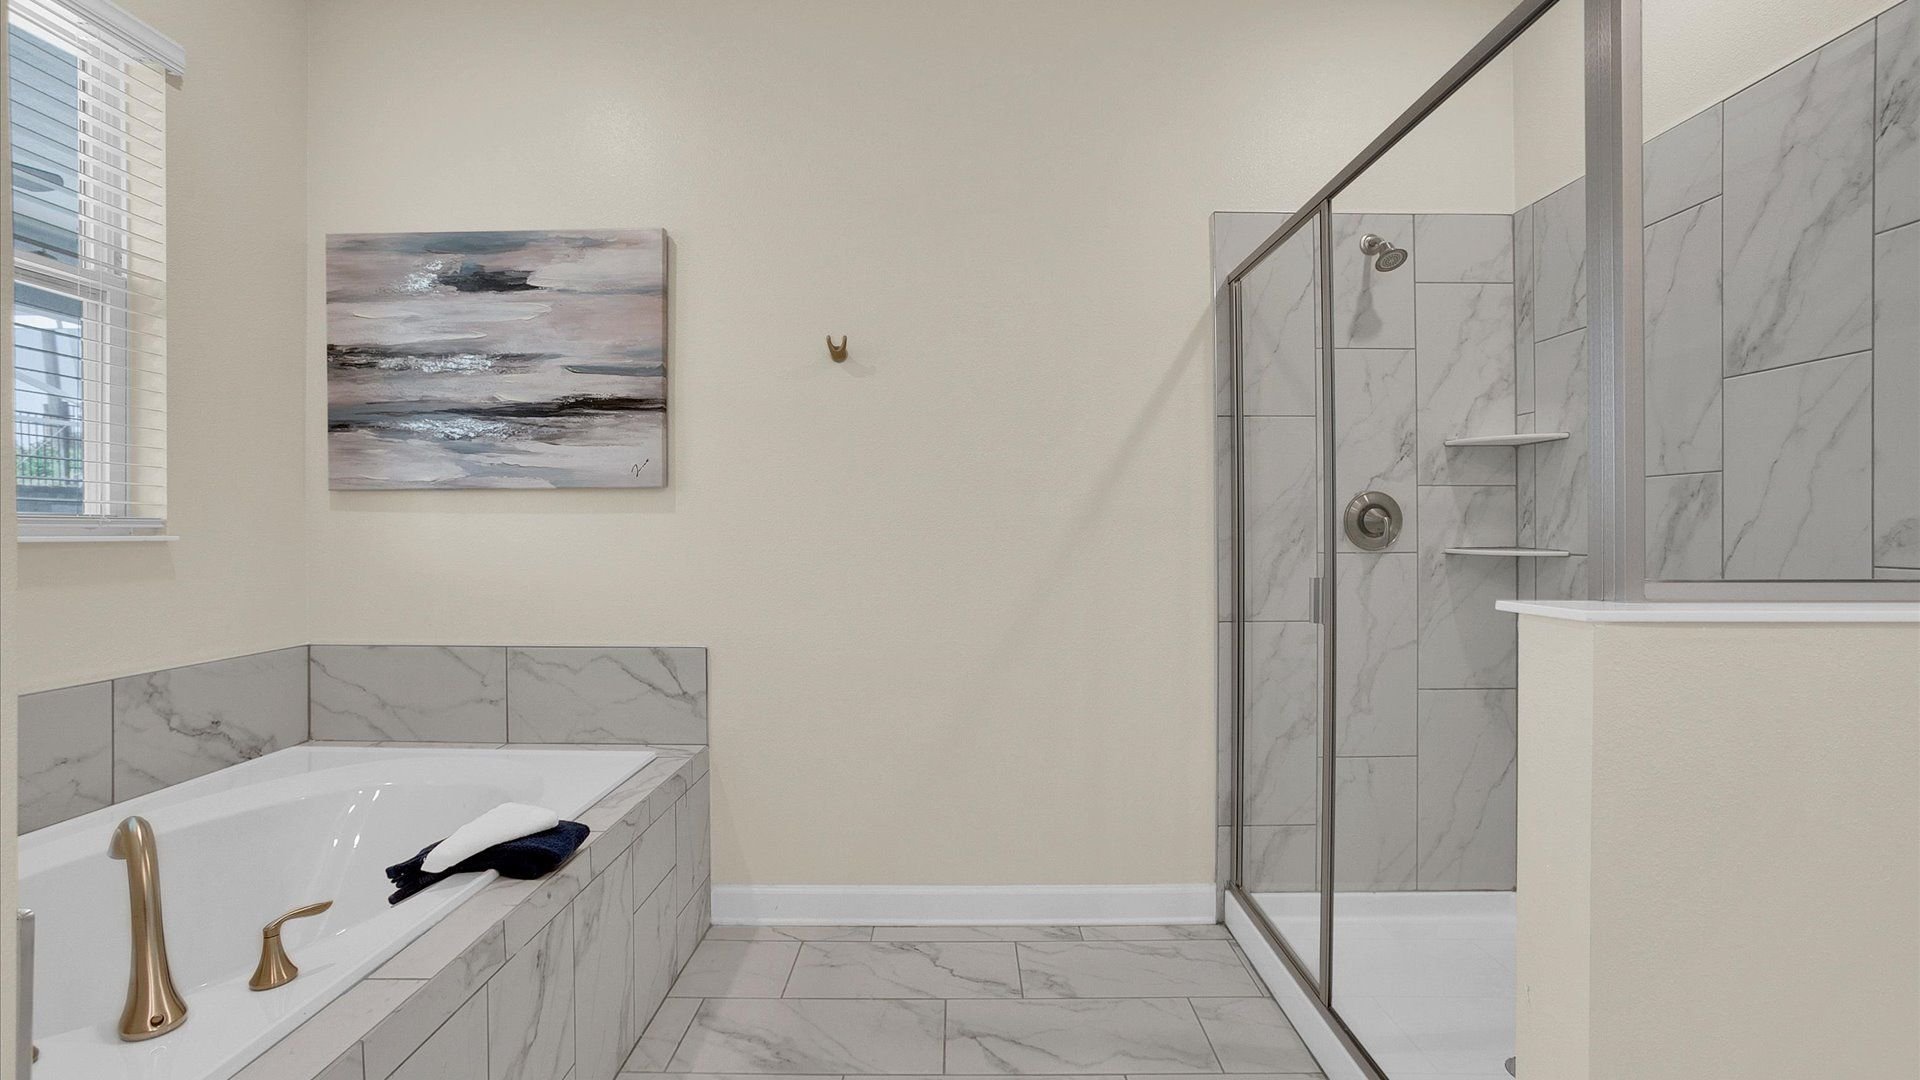 Master King Bathroom 1 (Angle)
Tub and Shower